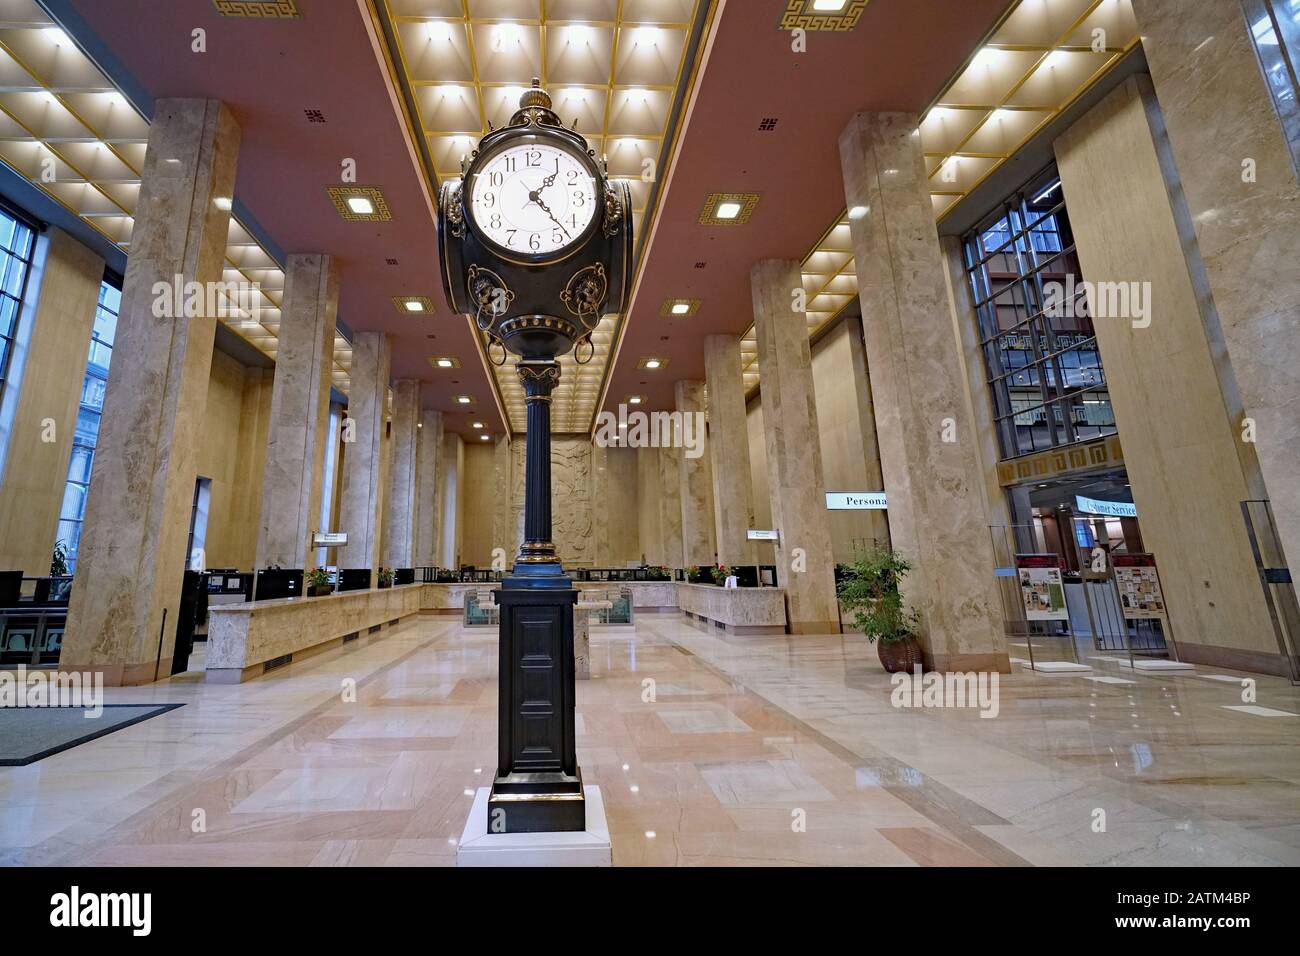 Toronto - FEBRUAR 2020: Große verzierte Uhr in der Bankhalle im Art-Deco-Stil, Hauptsitz der Scotiabank. Stockfoto